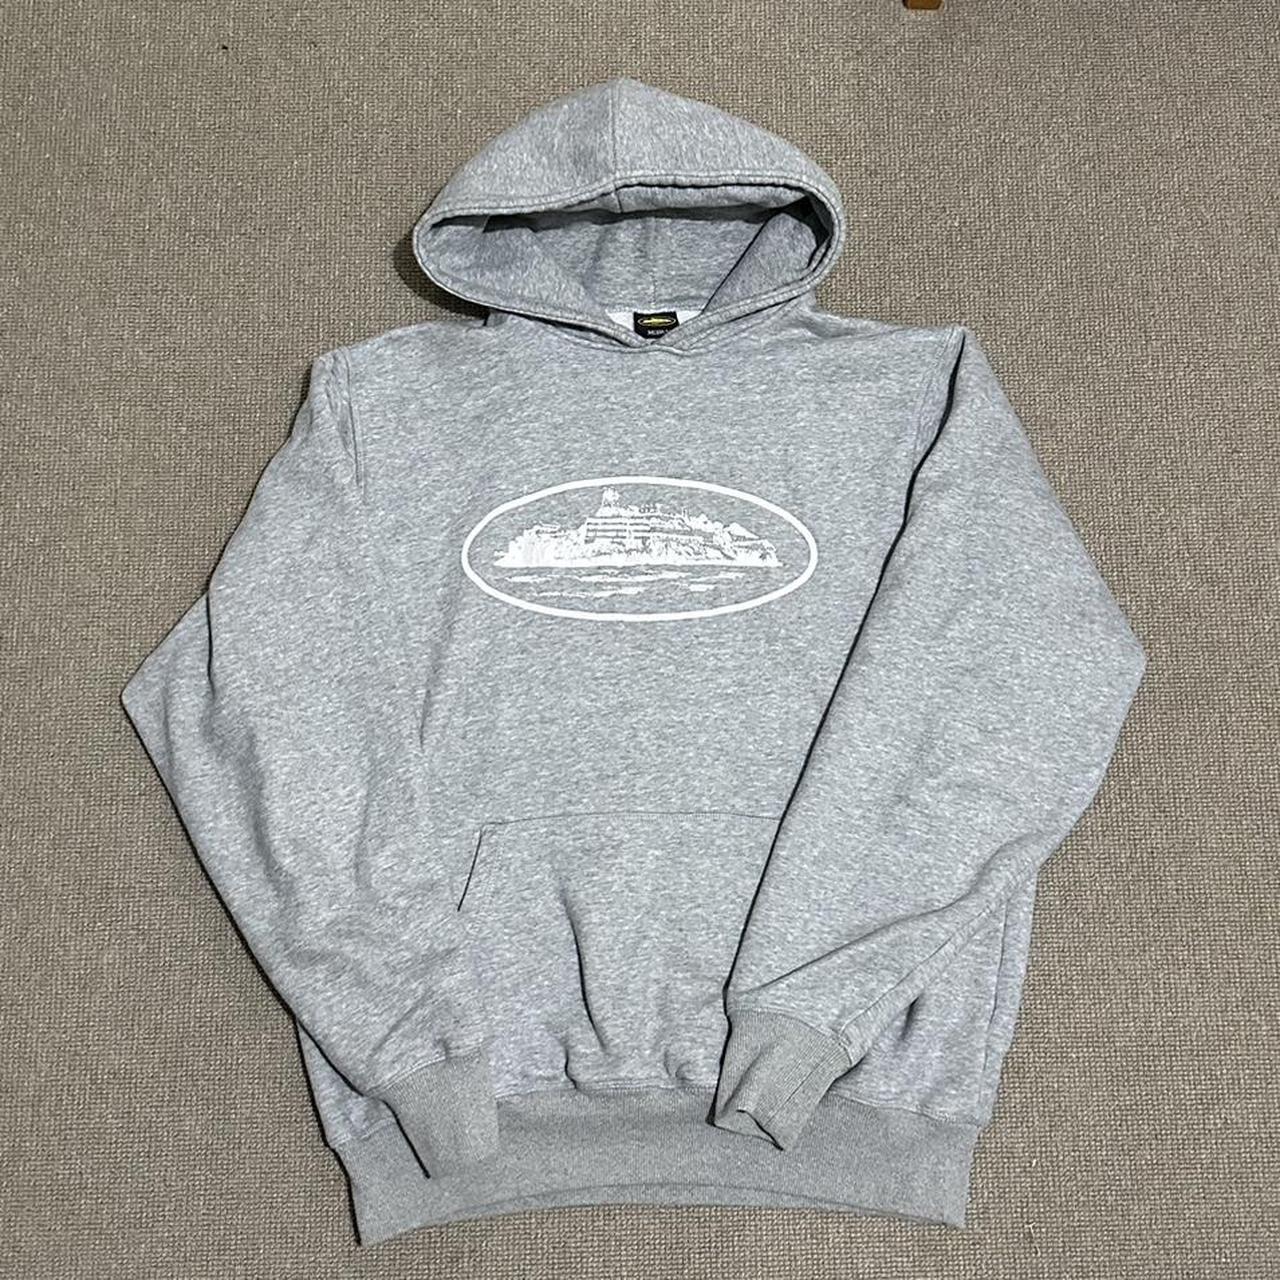 Grey Corteiz Alcatraz hoodie 😋 Original bag is... - Depop